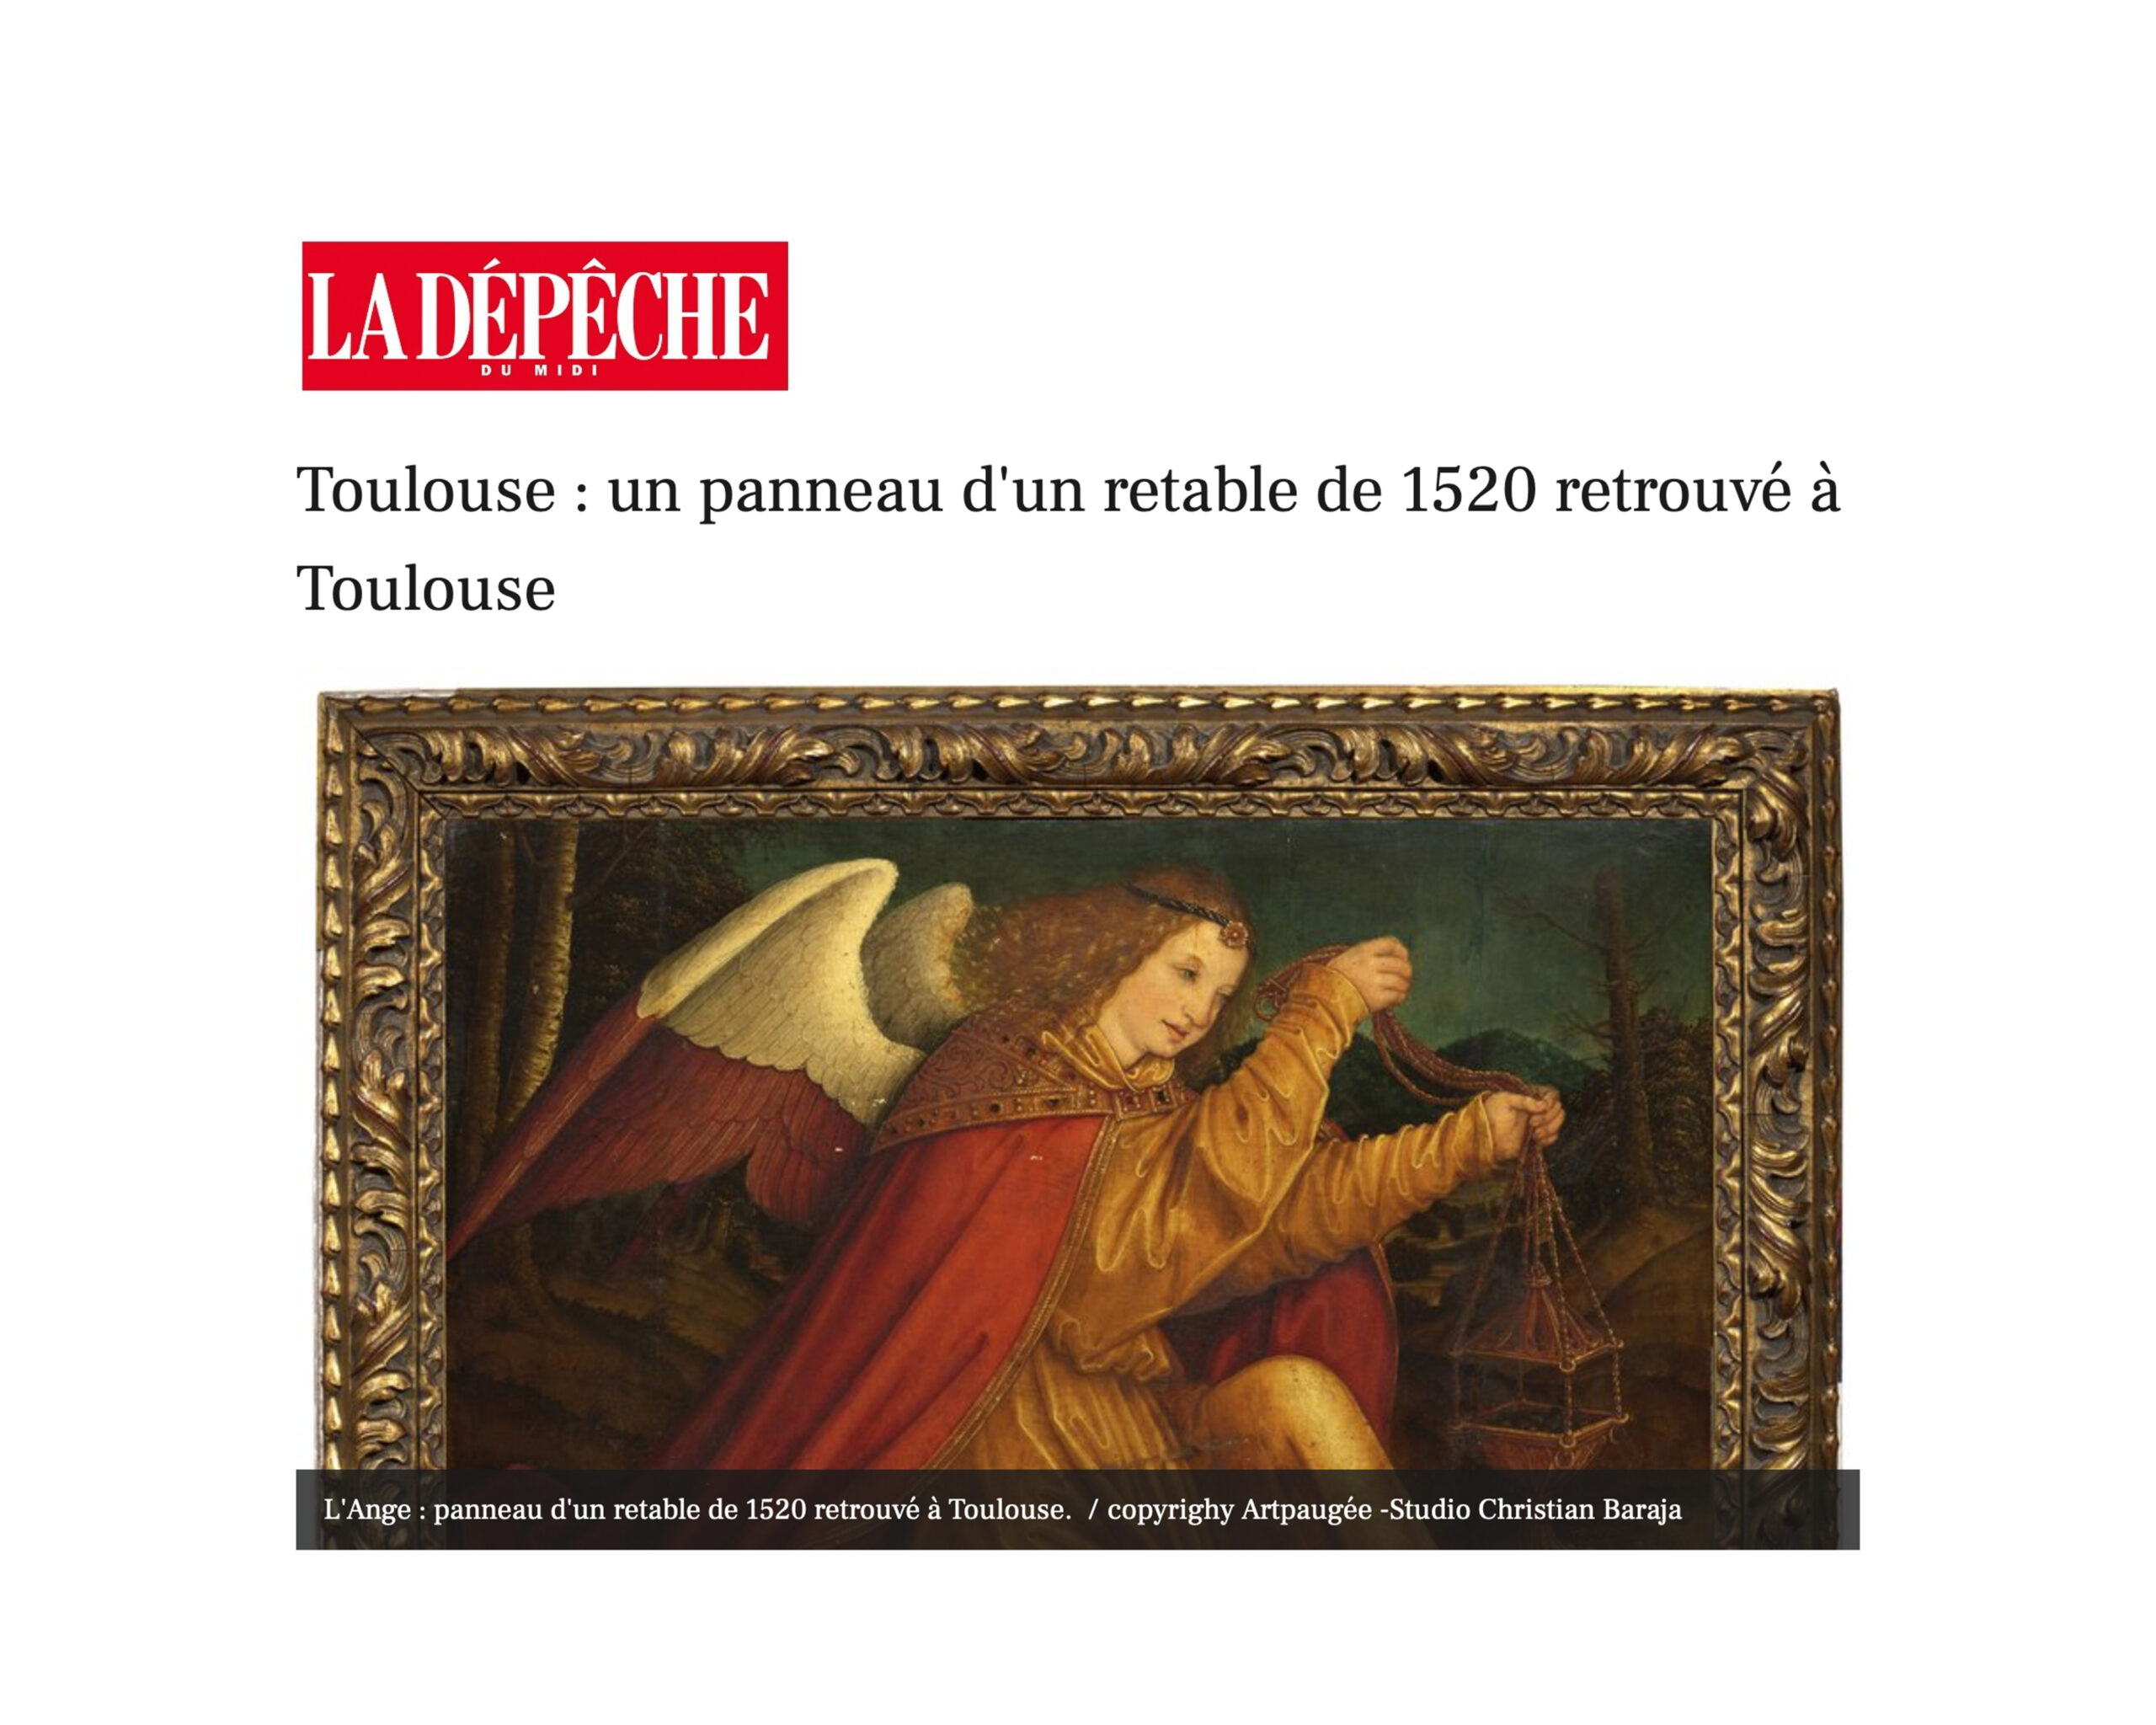 « Toulouse : un panneau d’un retable de 1520 retrouvé à Toulouse », 5 janvier 2022